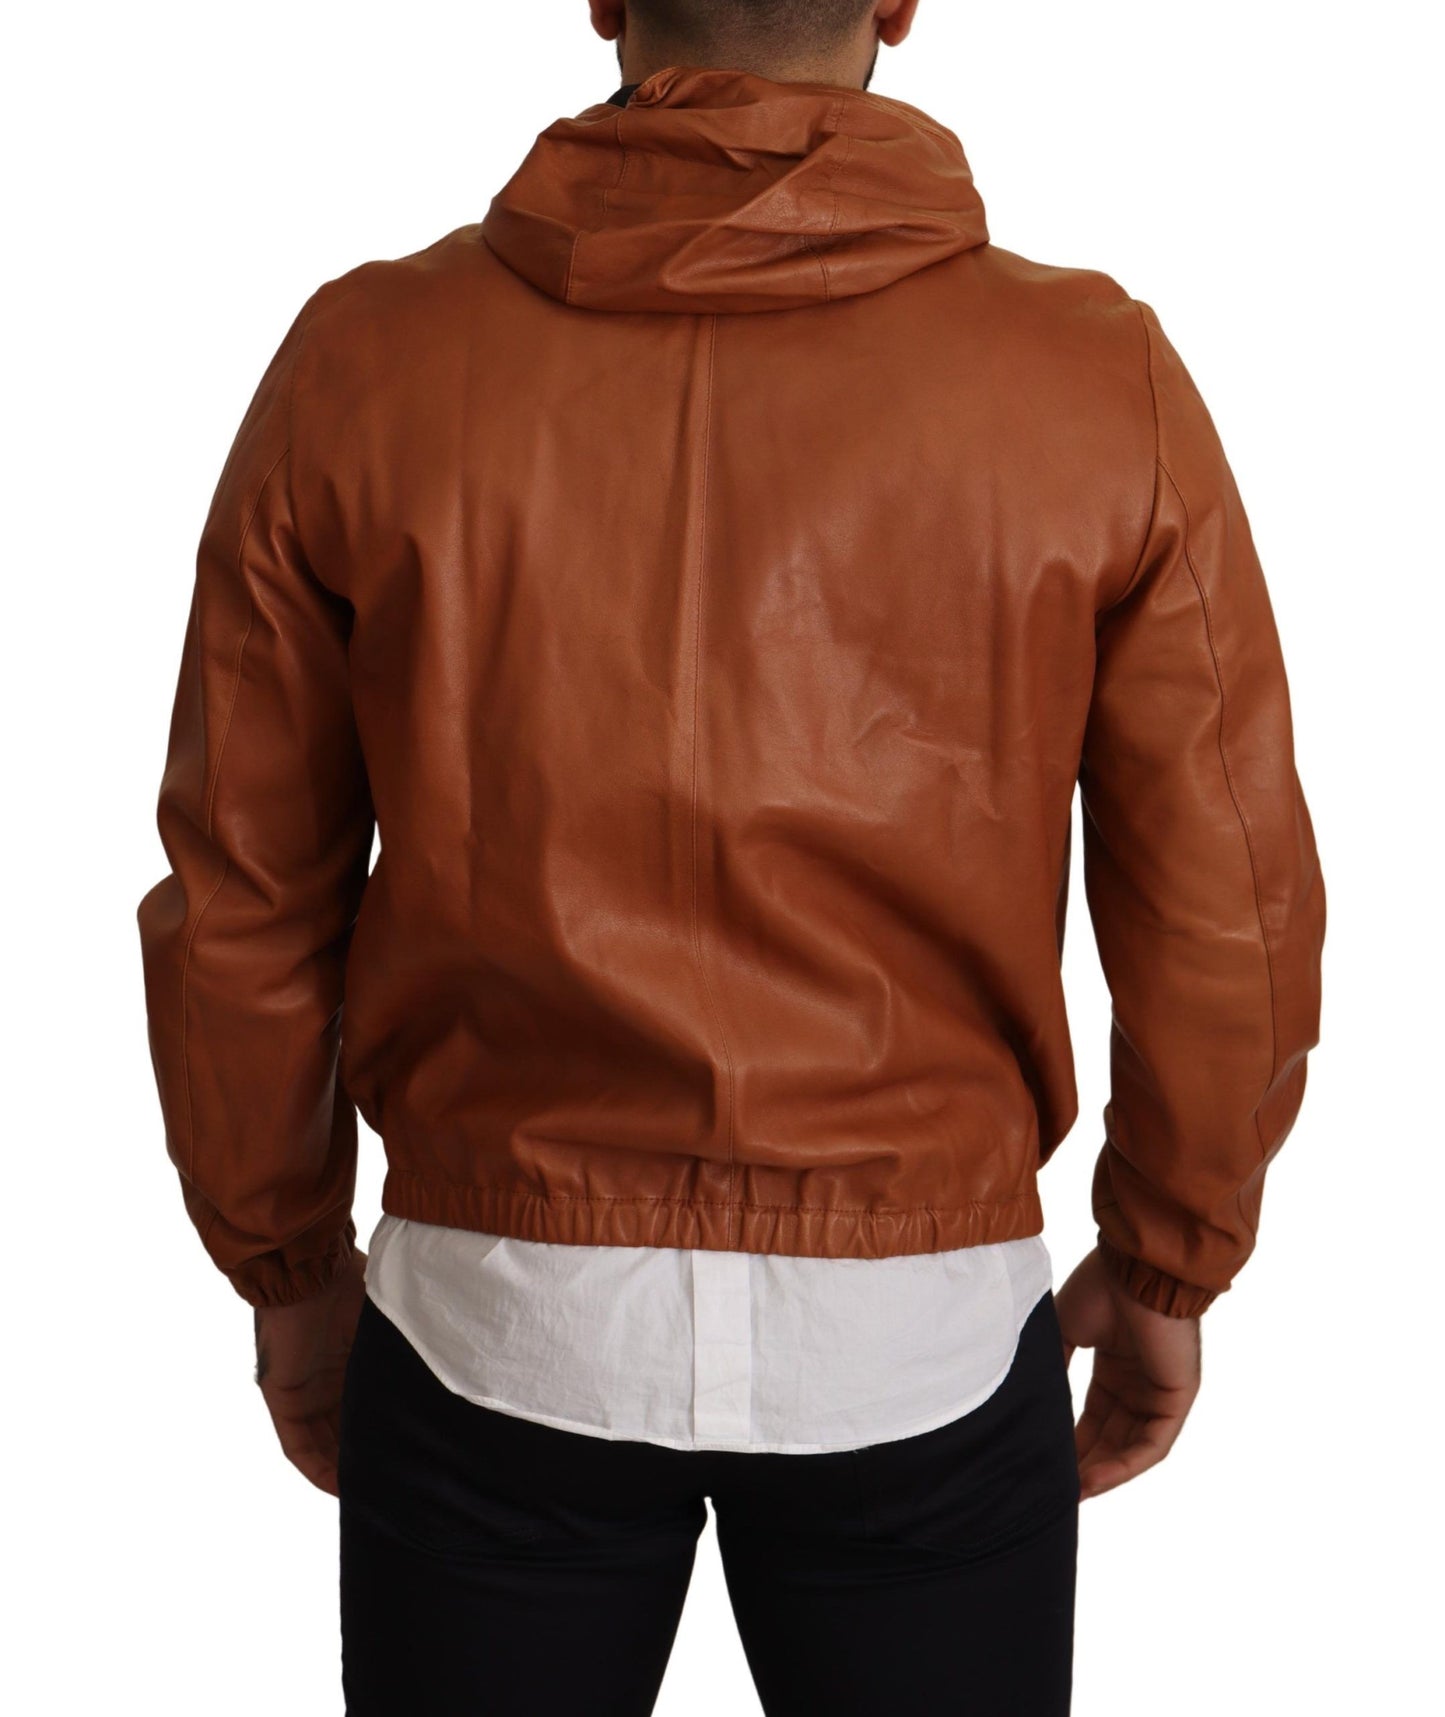 Elegant Brown Leather Bomber Jacket